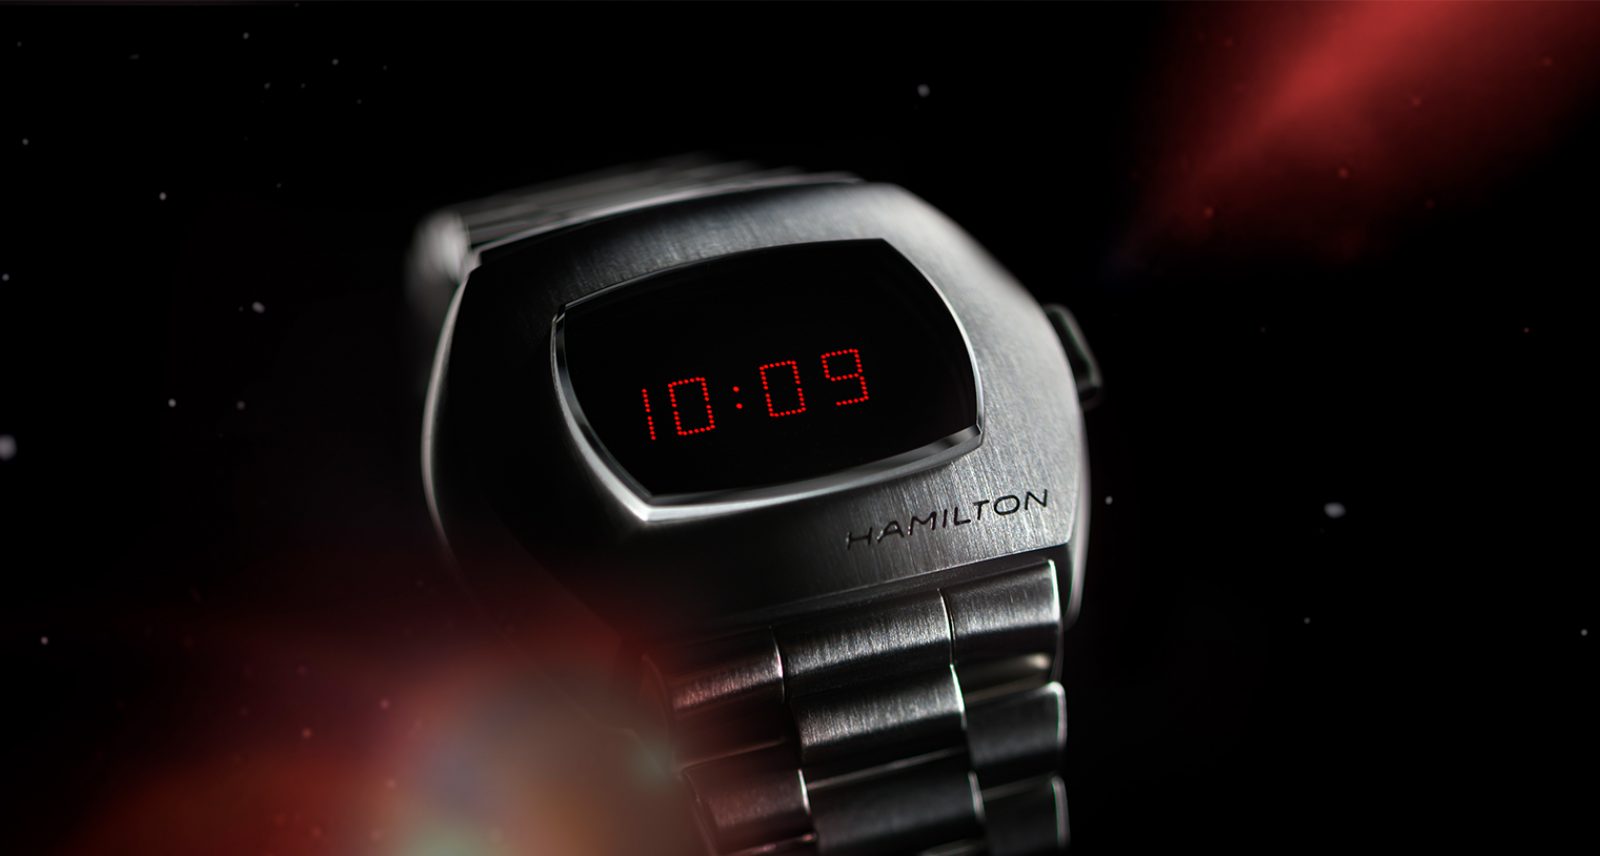 hamilton digital watch